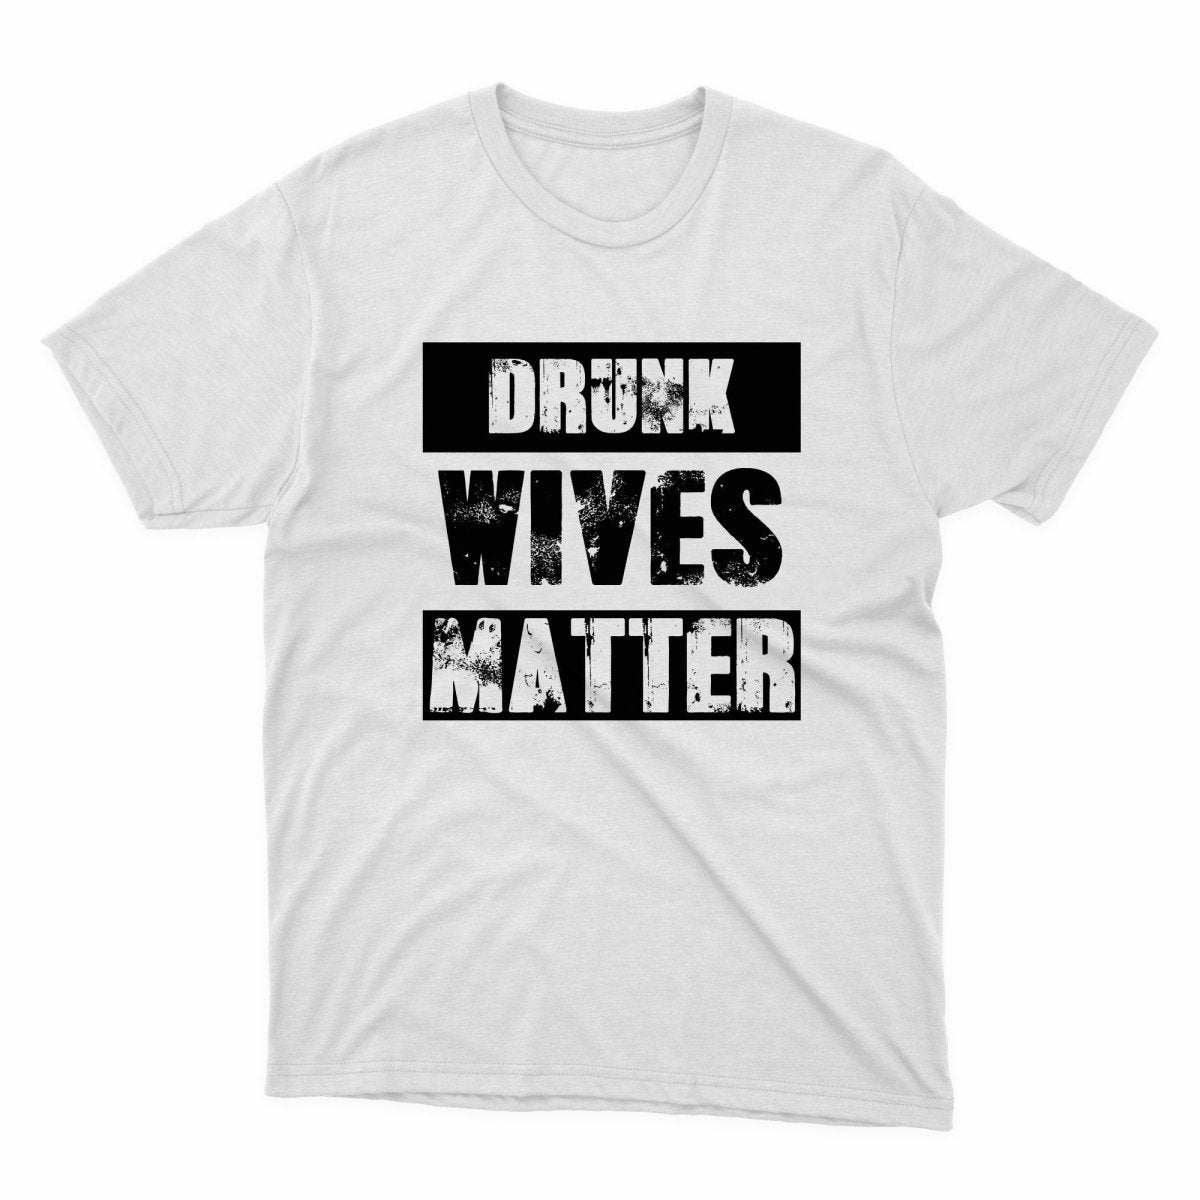 Drunk Wives Matter Shirt - stickerbullDrunk Wives Matter ShirtShirtsPrintifystickerbull31714217319555102427WhiteSa white t - shirt that says drunk wives matter